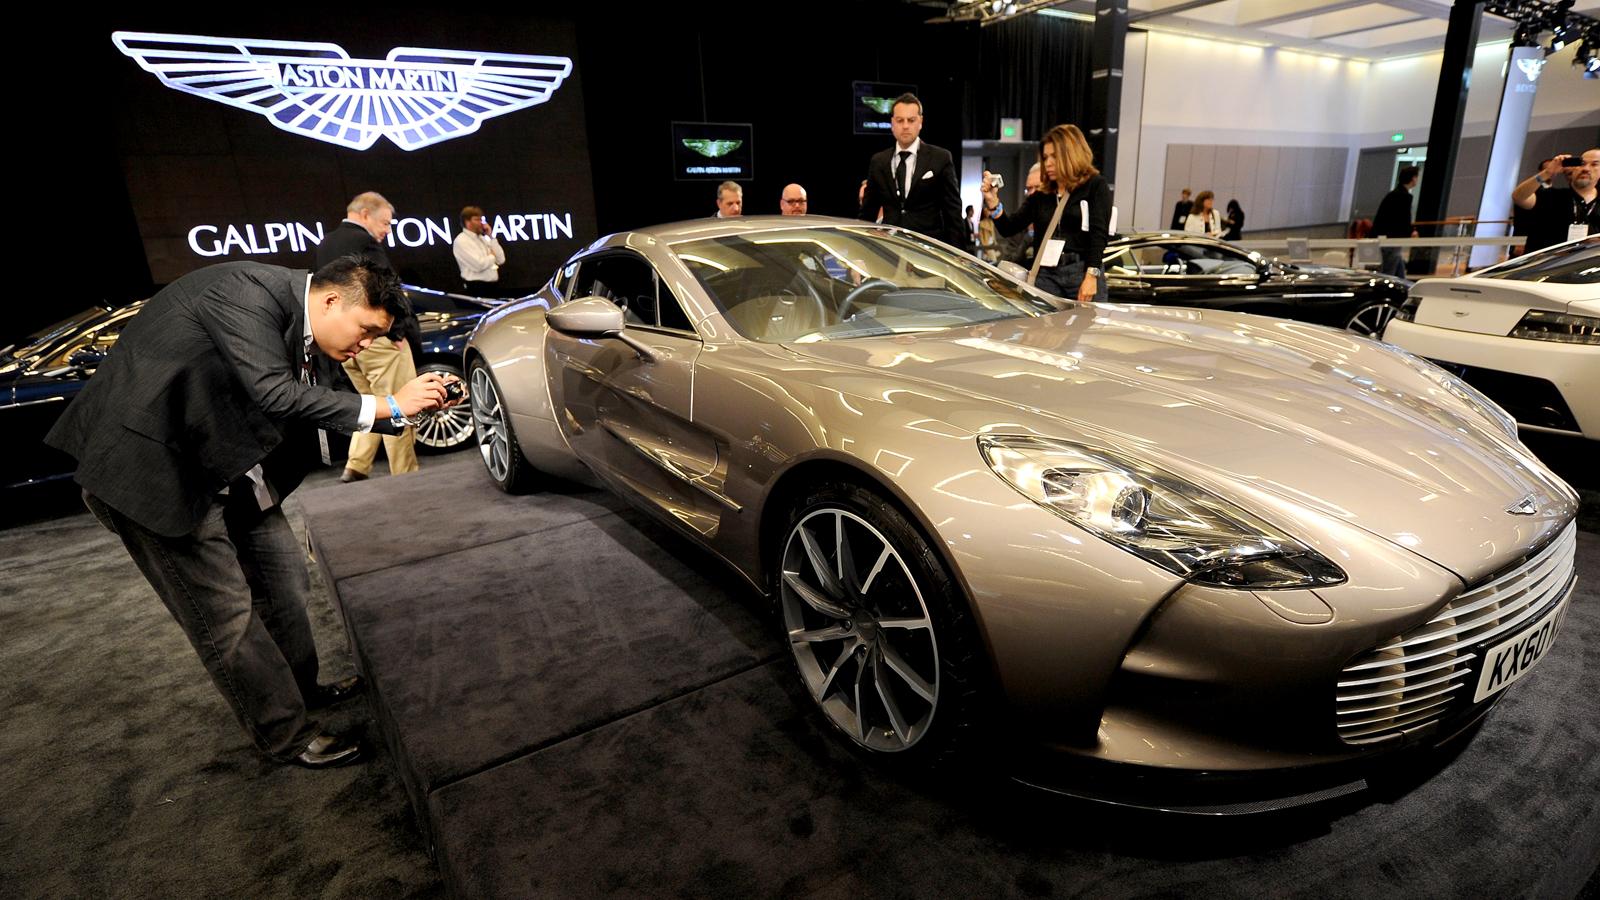 Aston Martin One-77  Brittisk limiterad lyx - byggs i 77 exemplar. Motor: V12. 750 hk. Acceleration: 0-100 km/tim på 3,7 s. Pris: 1,4 miljoner dollar - ca. 9 580 000 kronor.